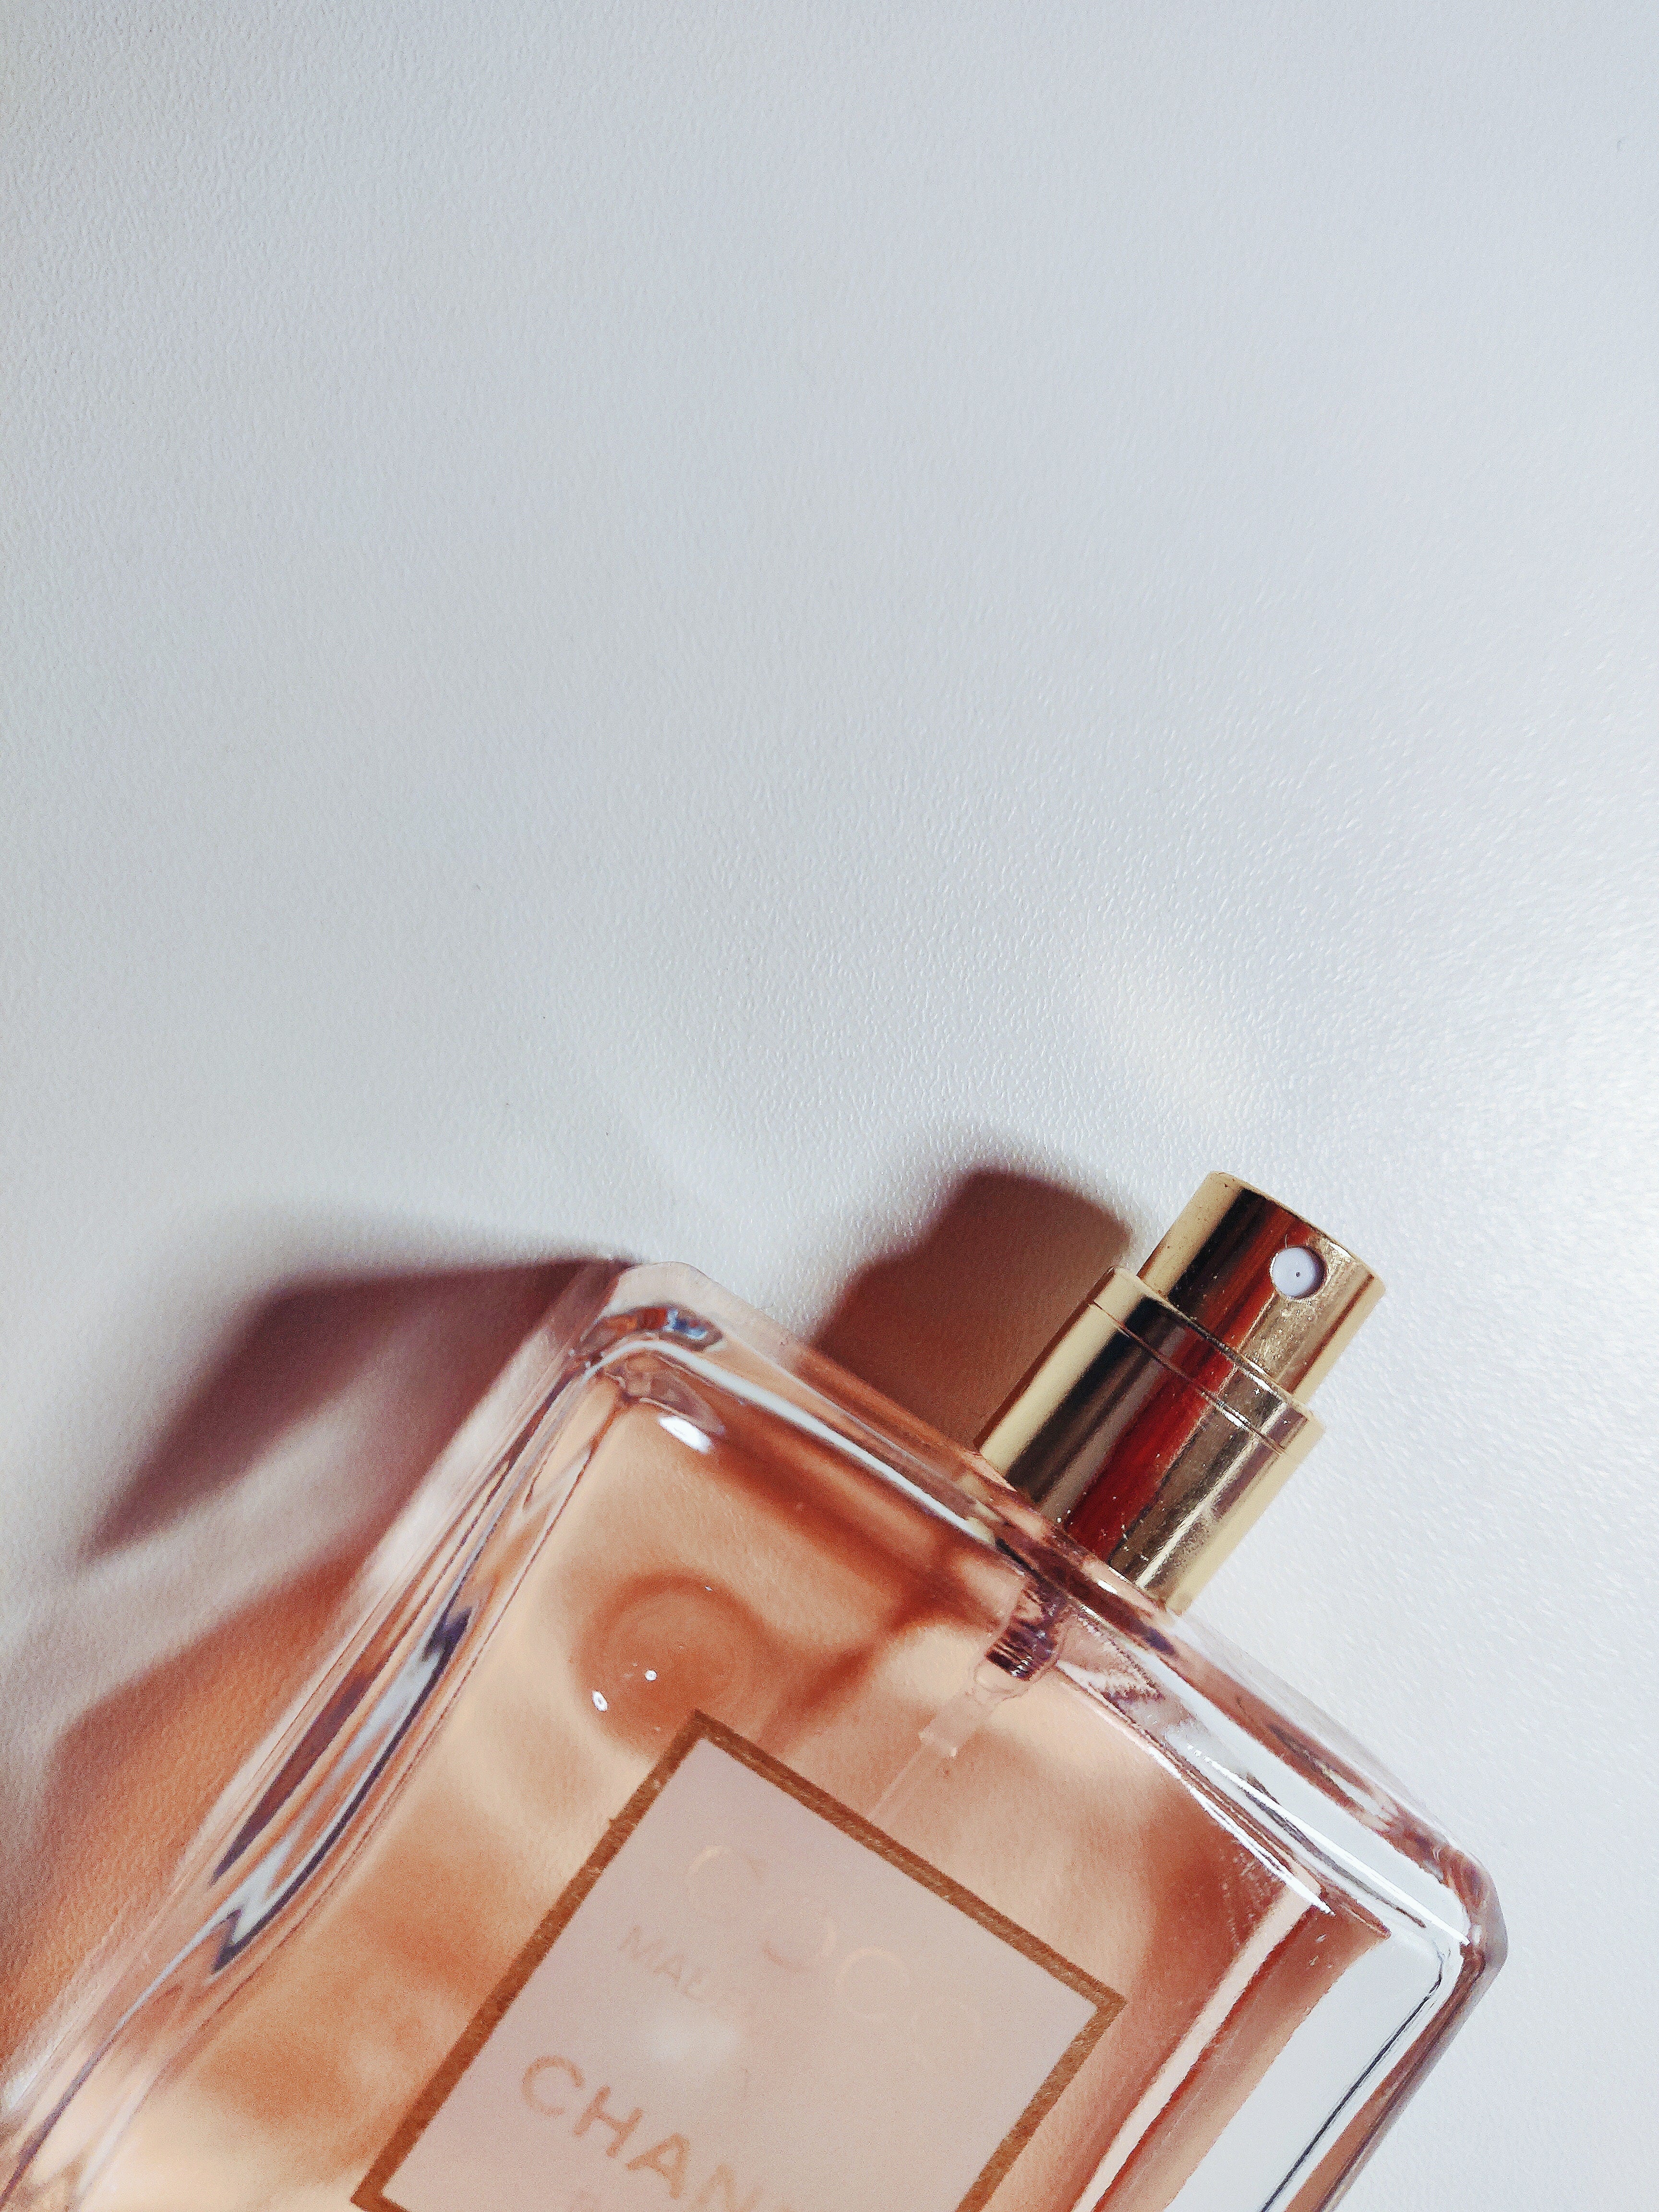 Las 5 Mejores Formas de Cuidar y Mantener Tu Perfume en Perfecto Estado.